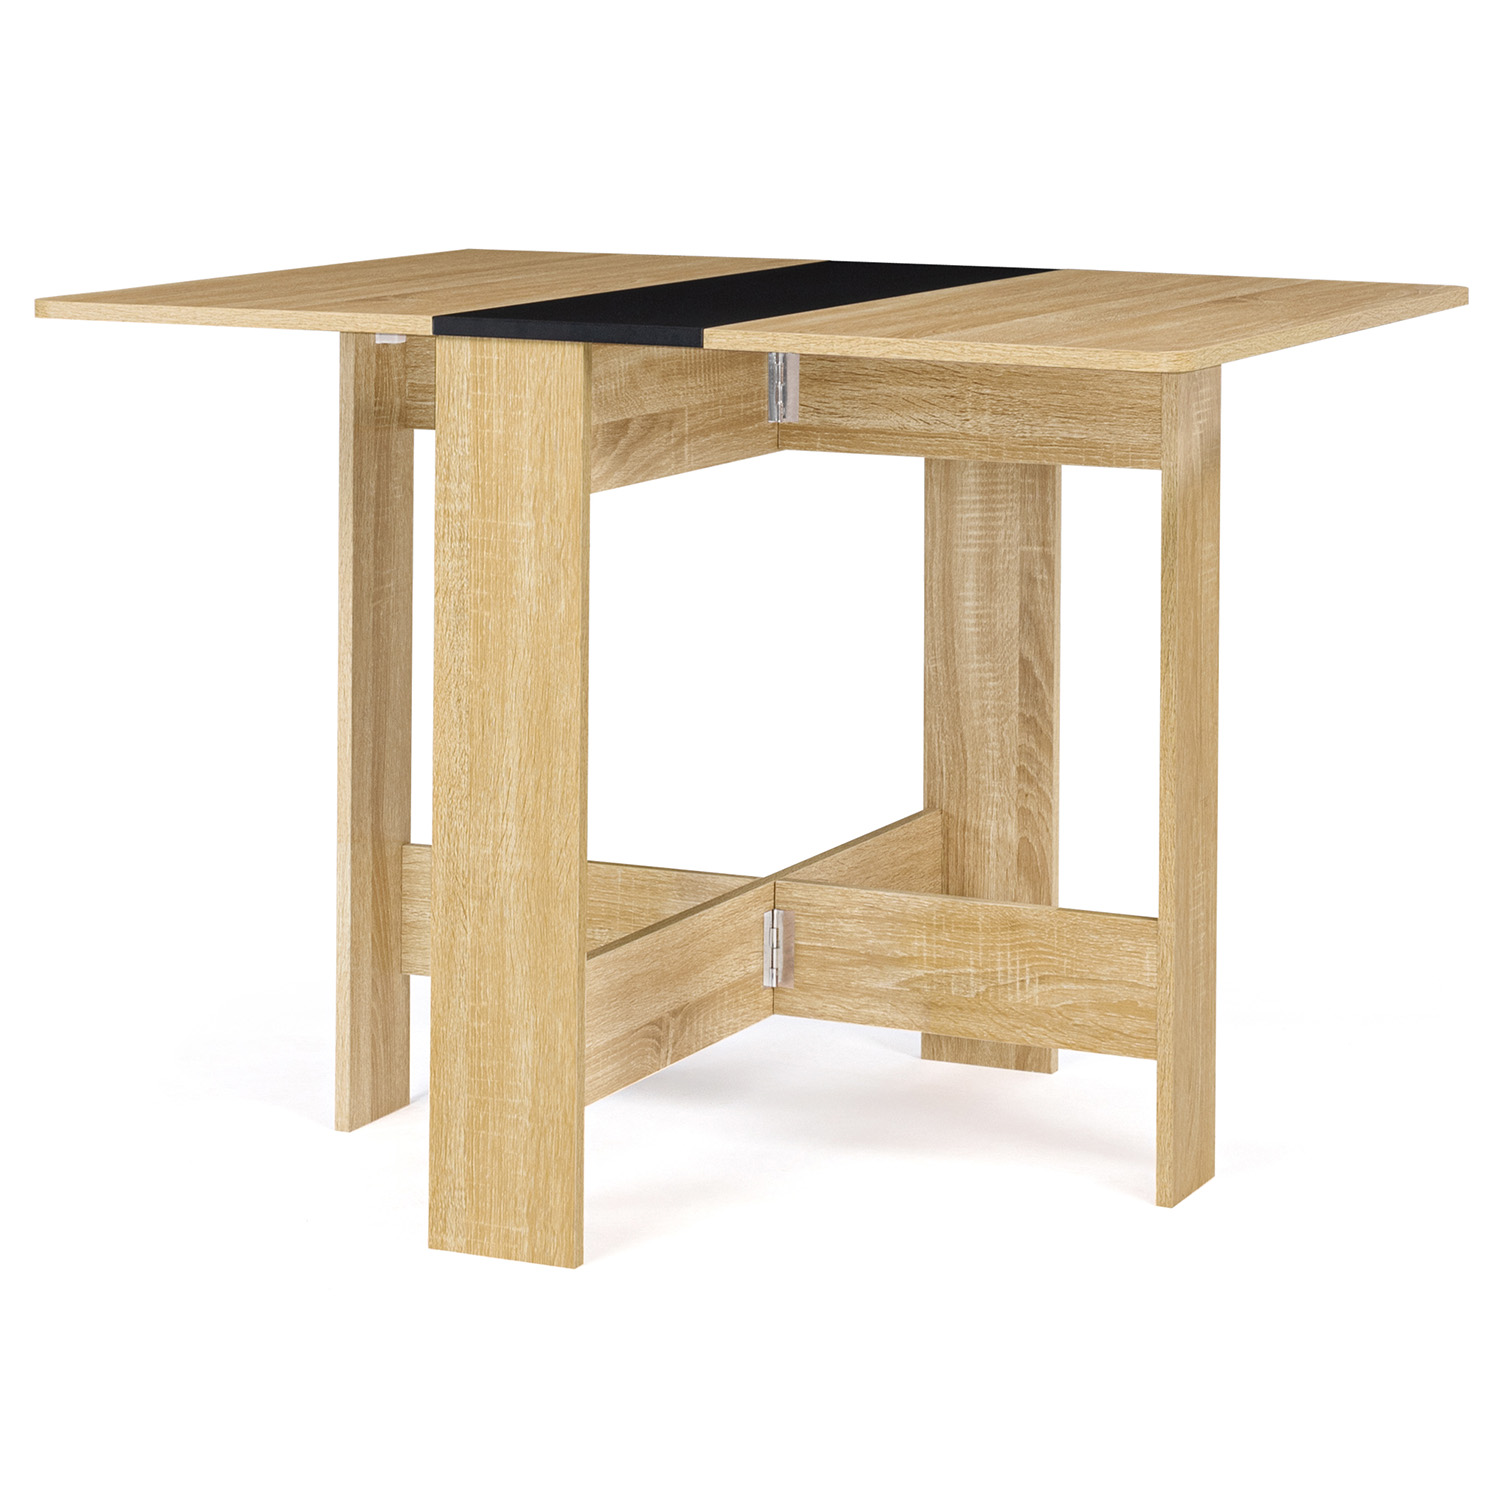 IDMarket - Table Console Extensible Toronto 14 Personnes 300 cm Design  Industriel